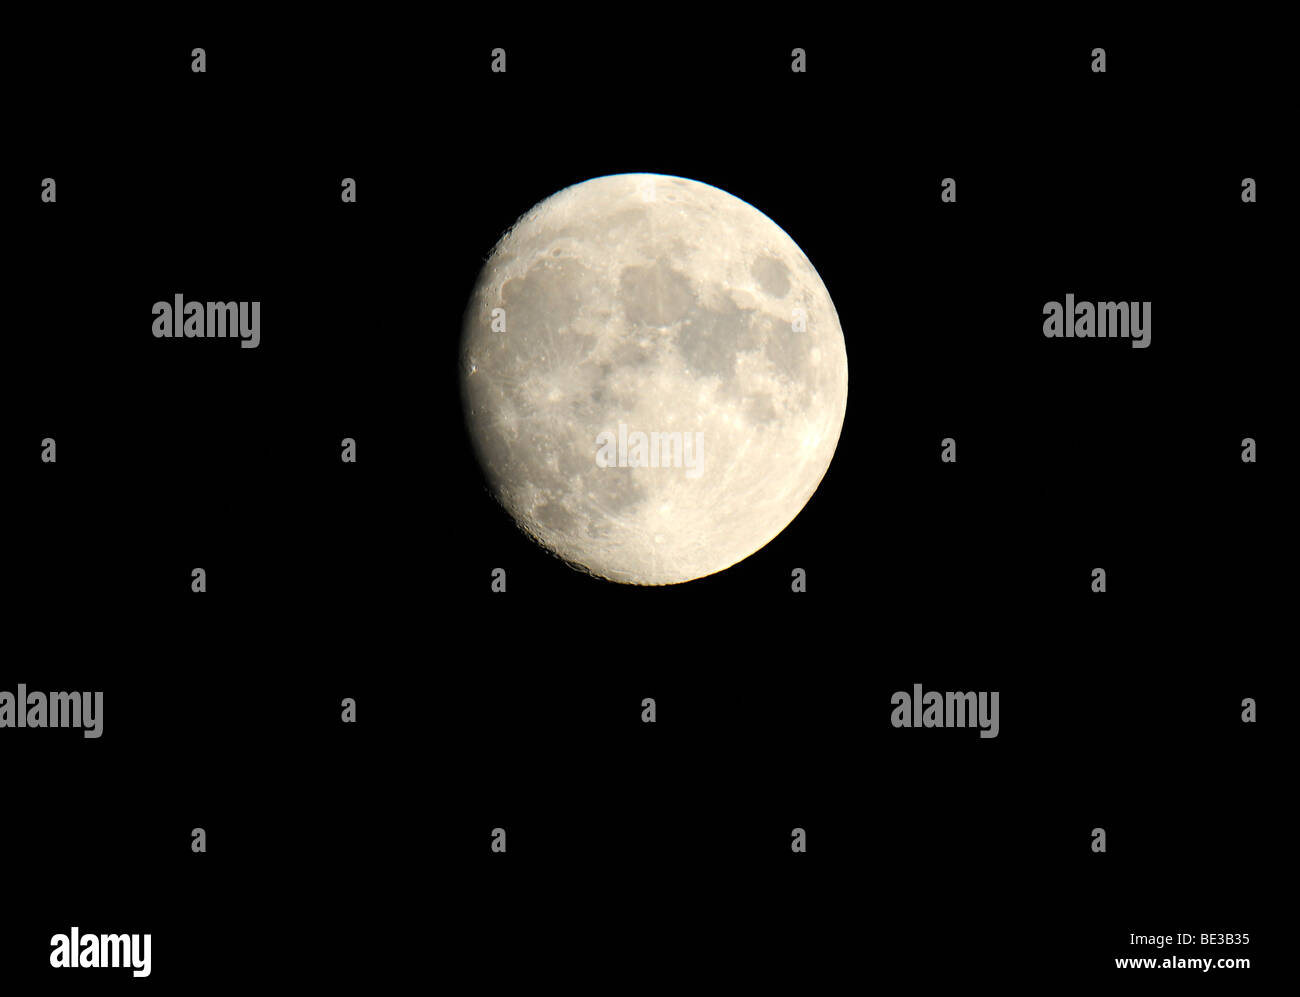 Moon, lunar crater, close-up Stock Photo